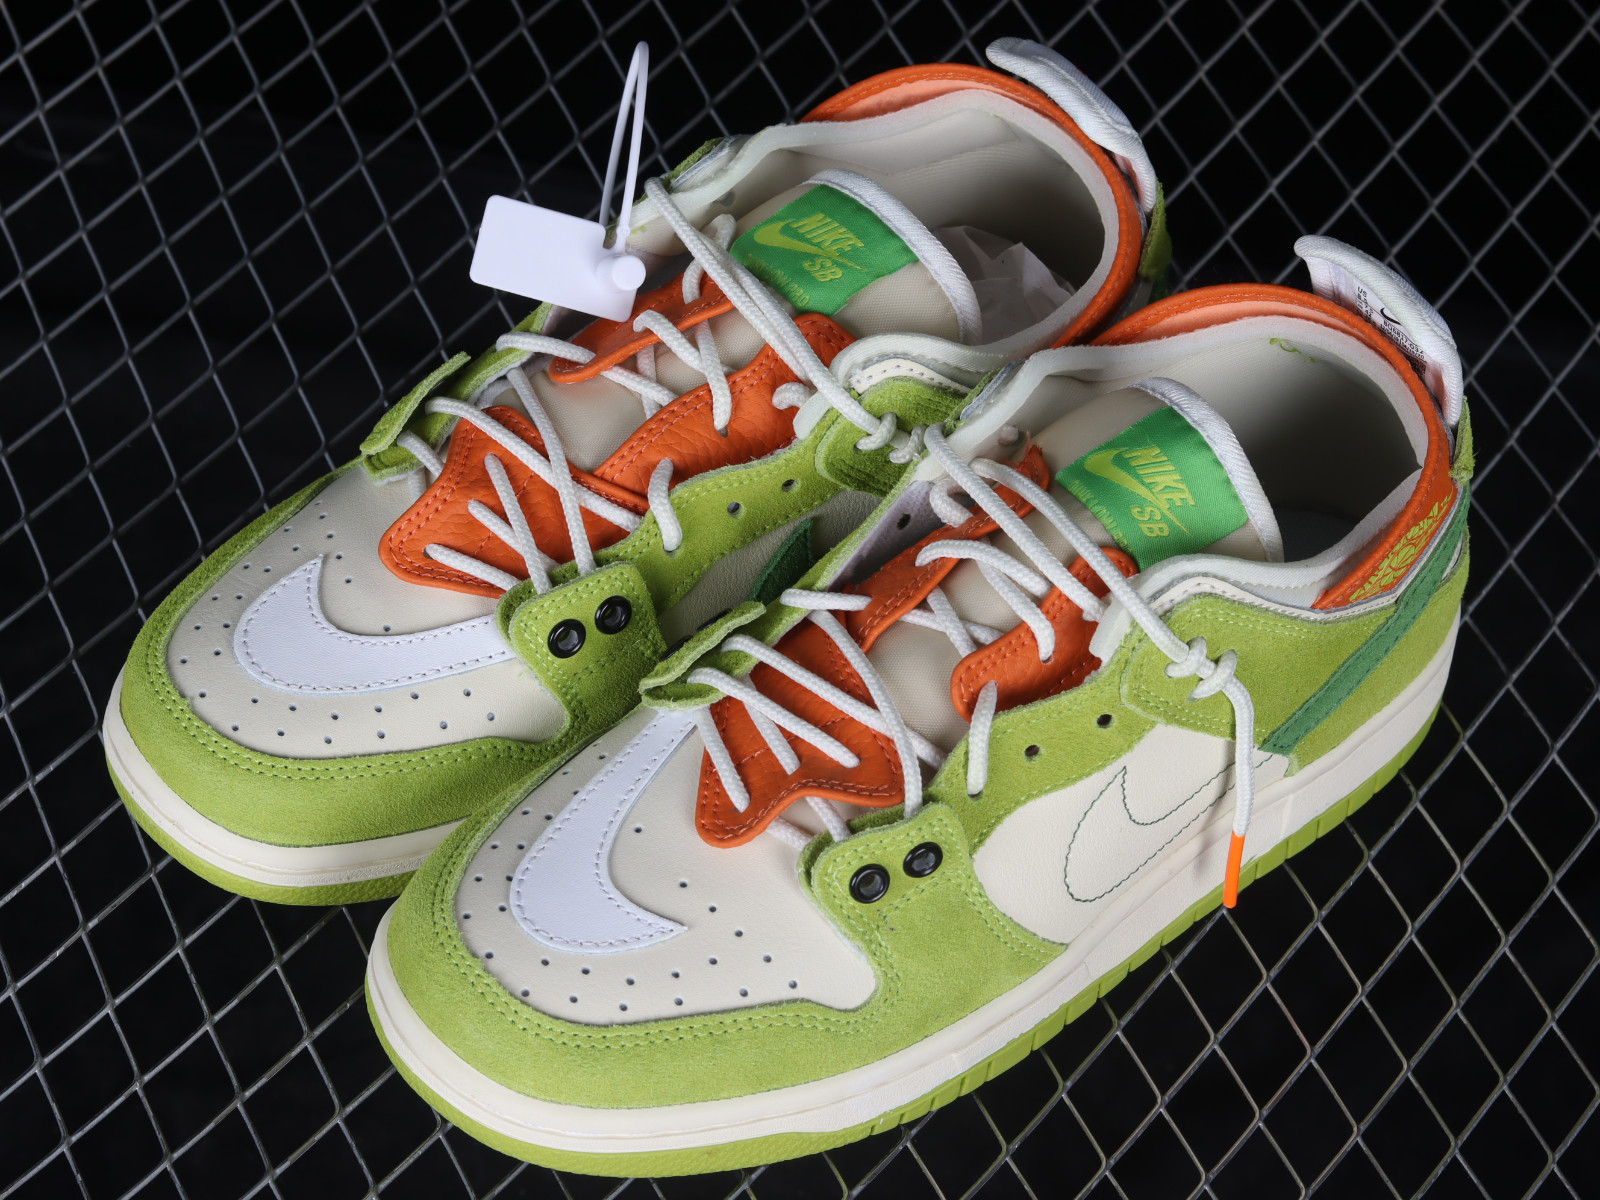 Nike SB Dunk Low Pro (Barely Green) - Sneaker Freaker